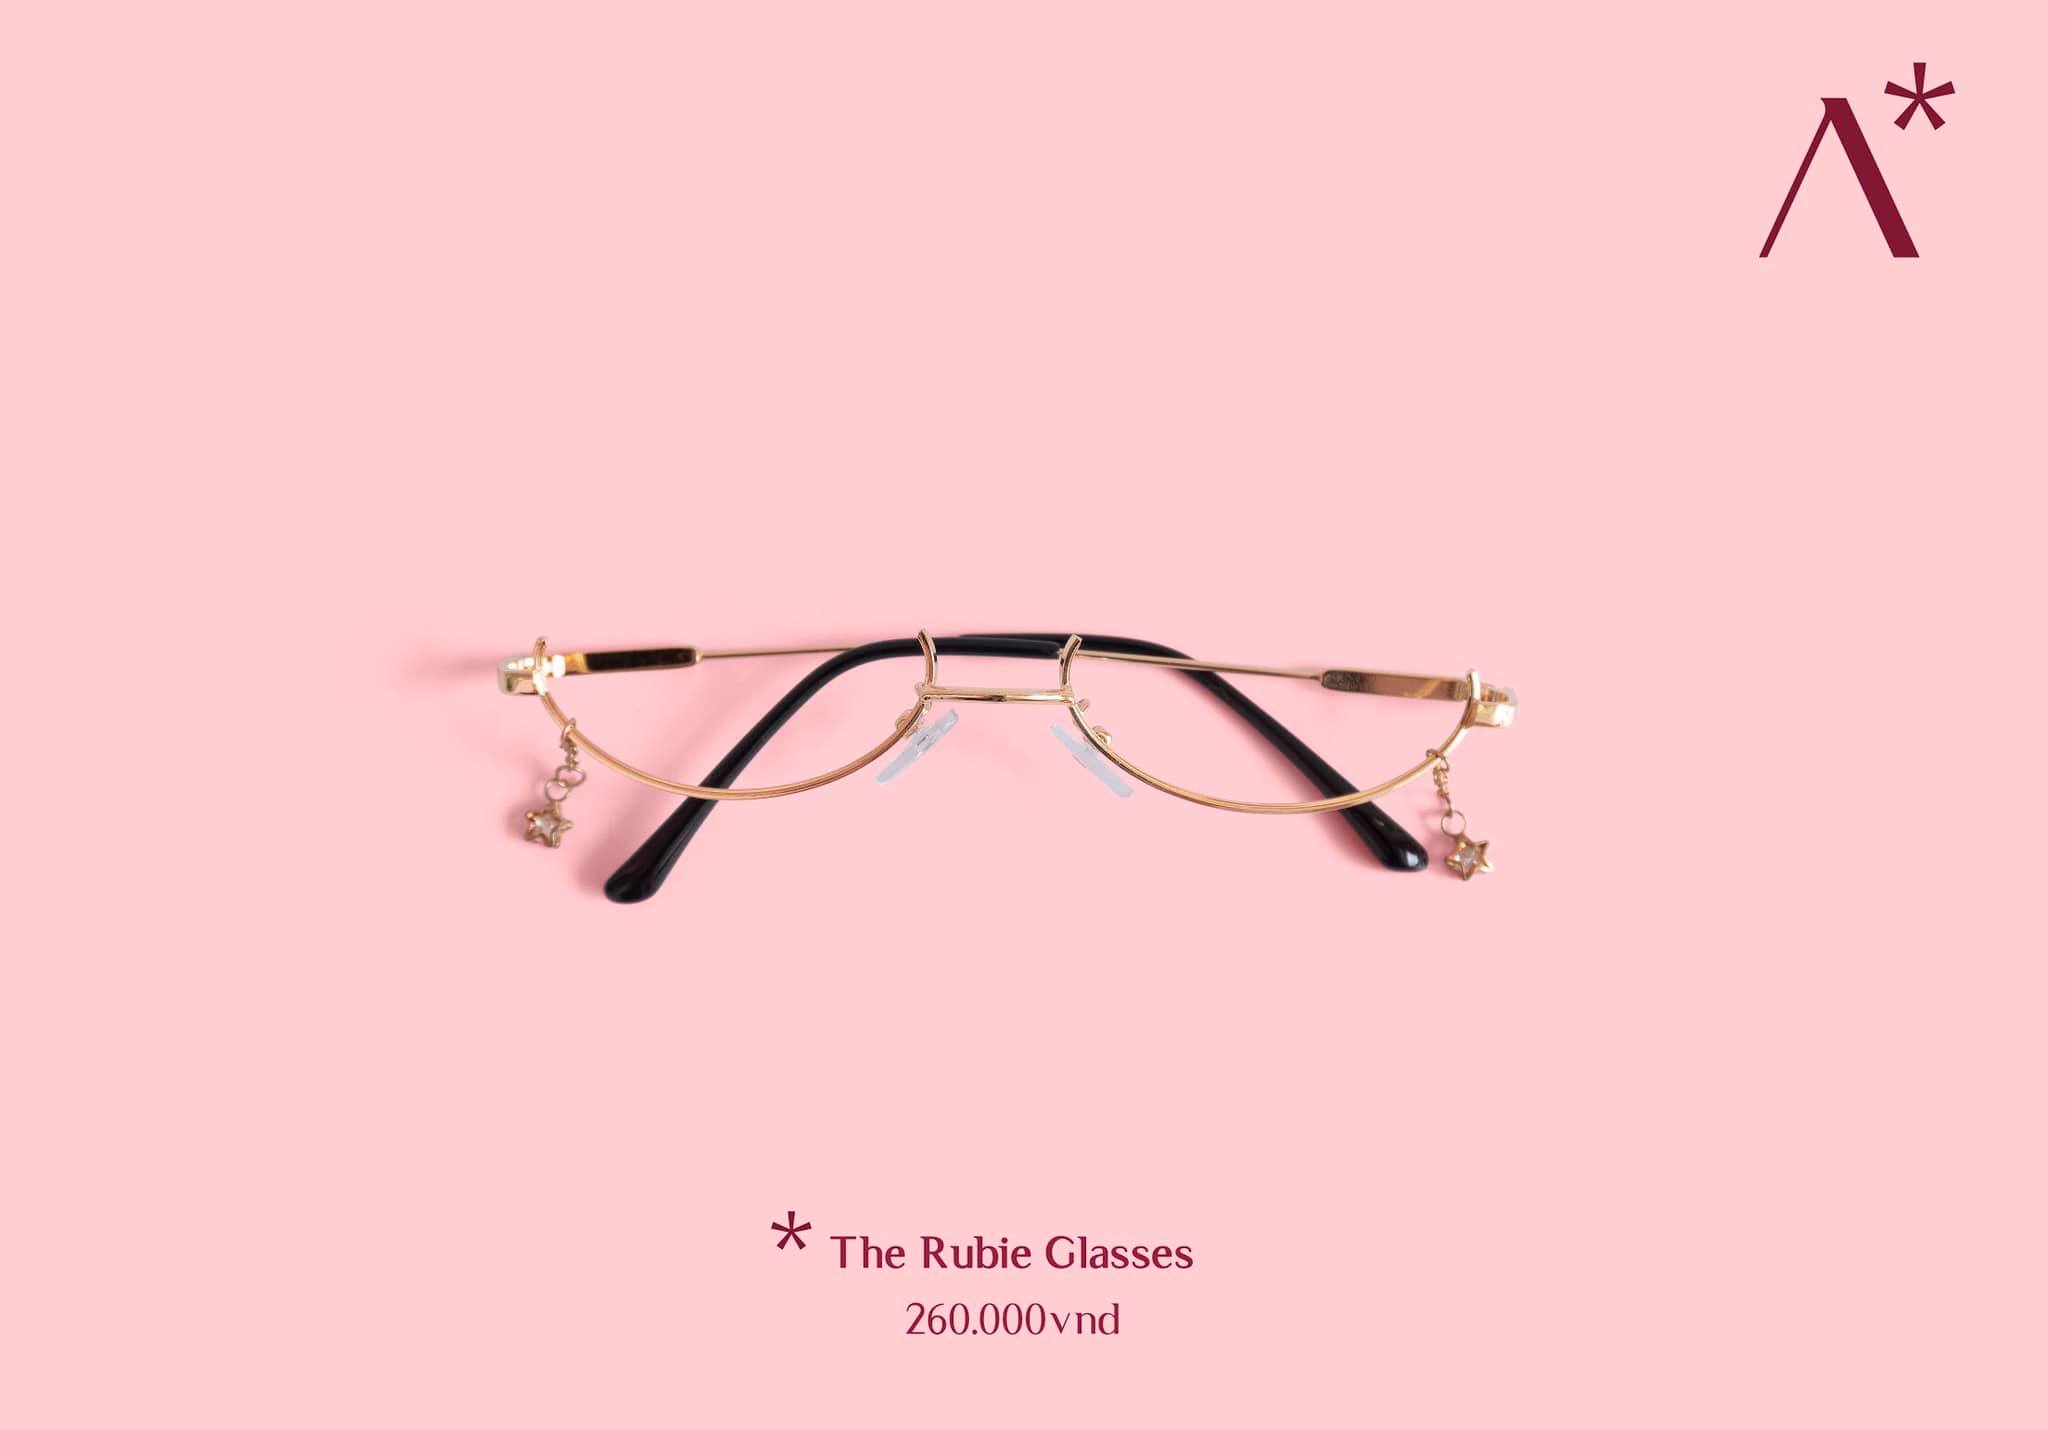 The Rubie Glasses